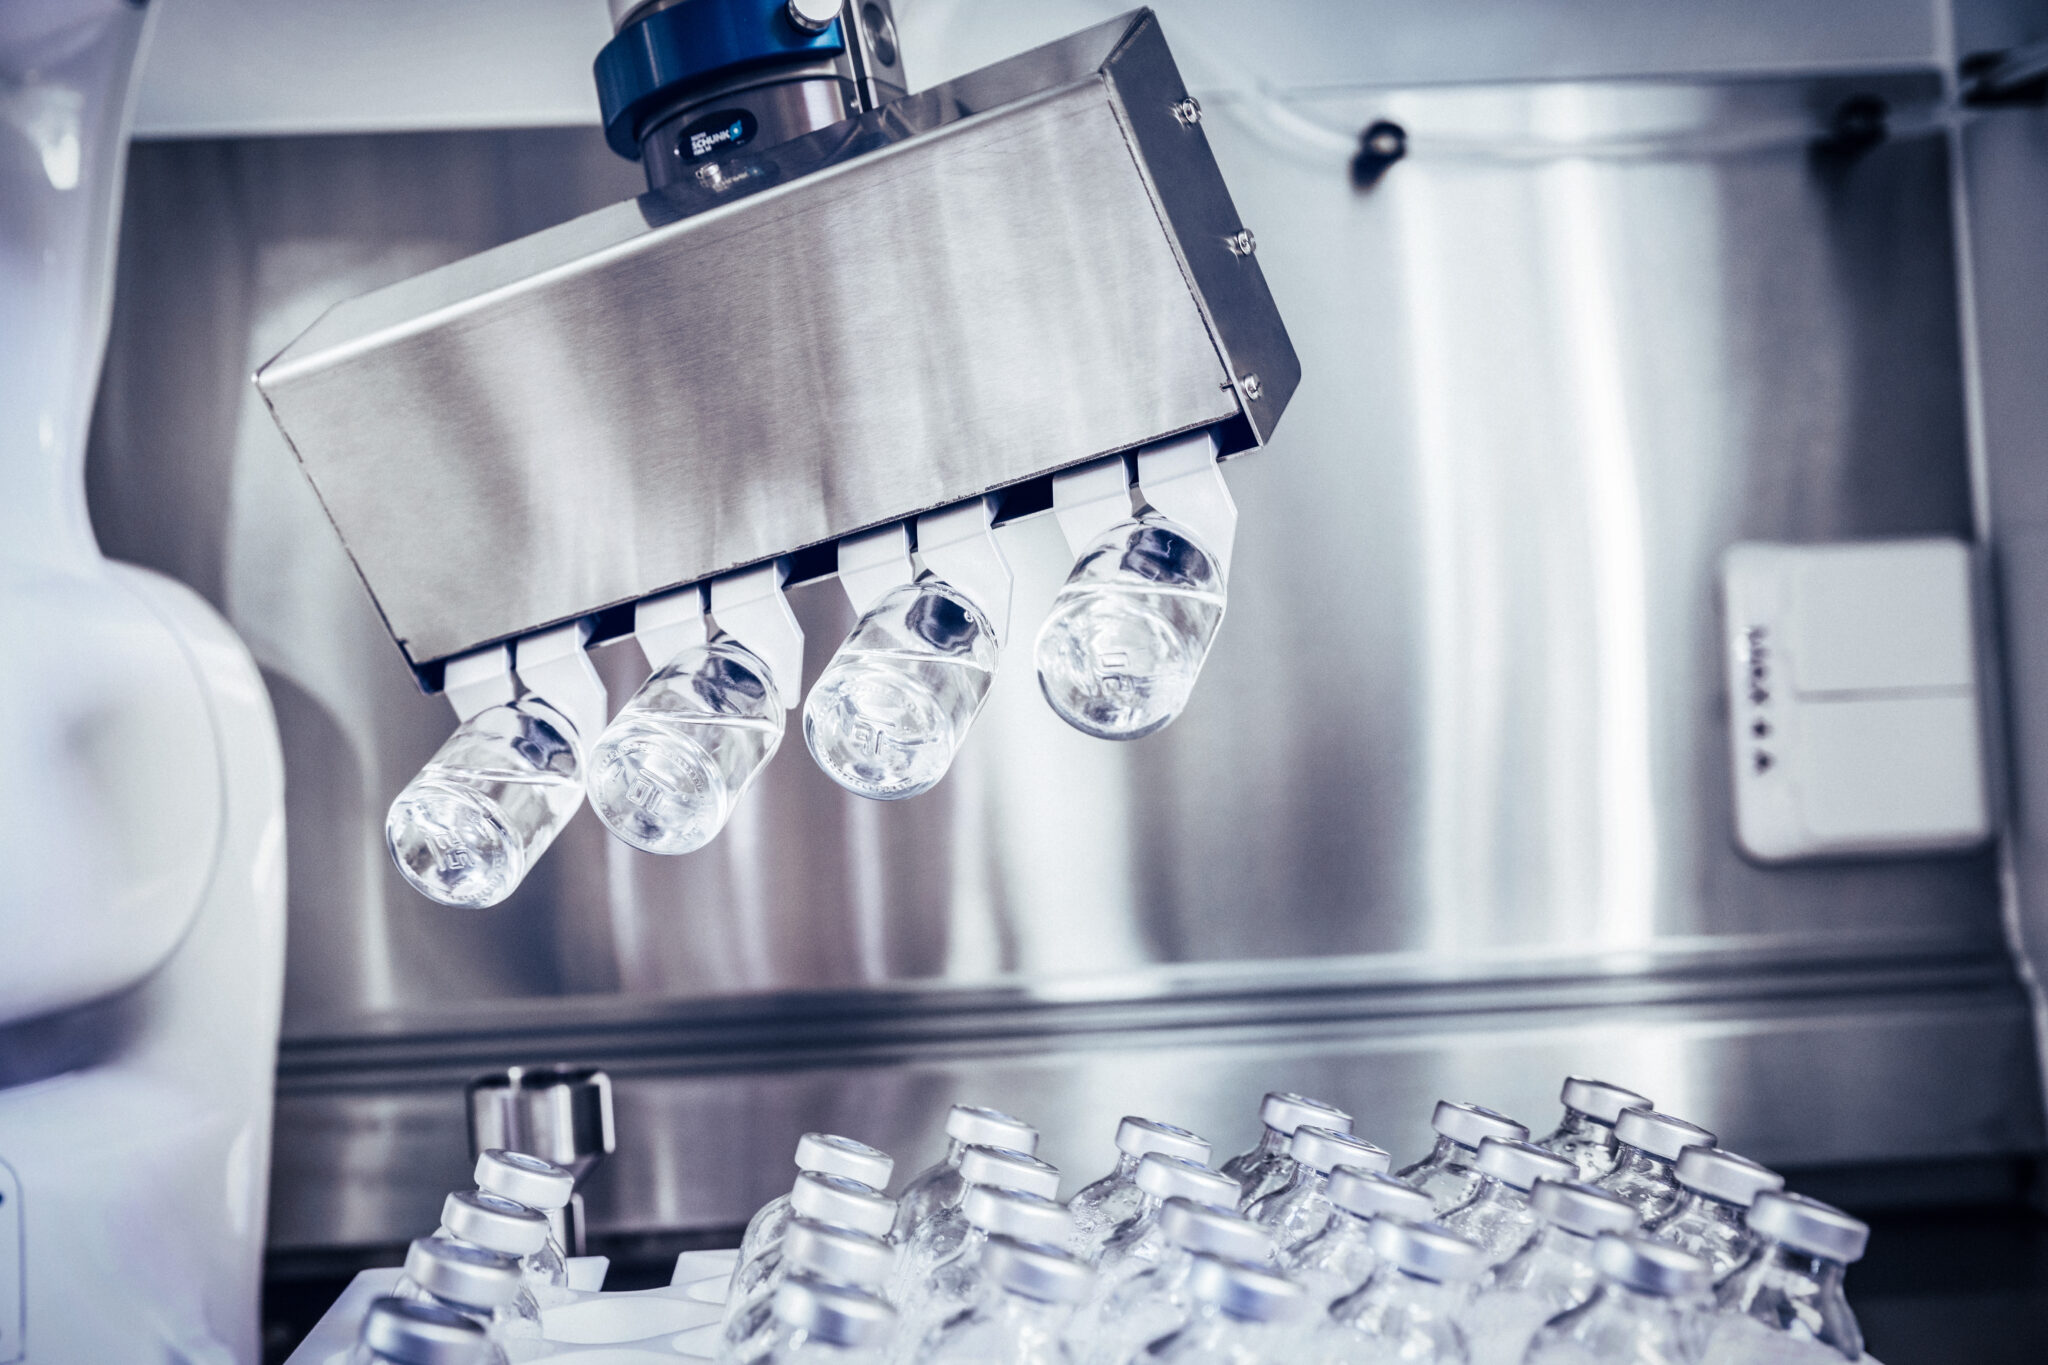 Käyttökuntoon saattamisen täysautomatisointi parantaa antibioottien valmistuksen turvallisuutta ja tehokkuutta